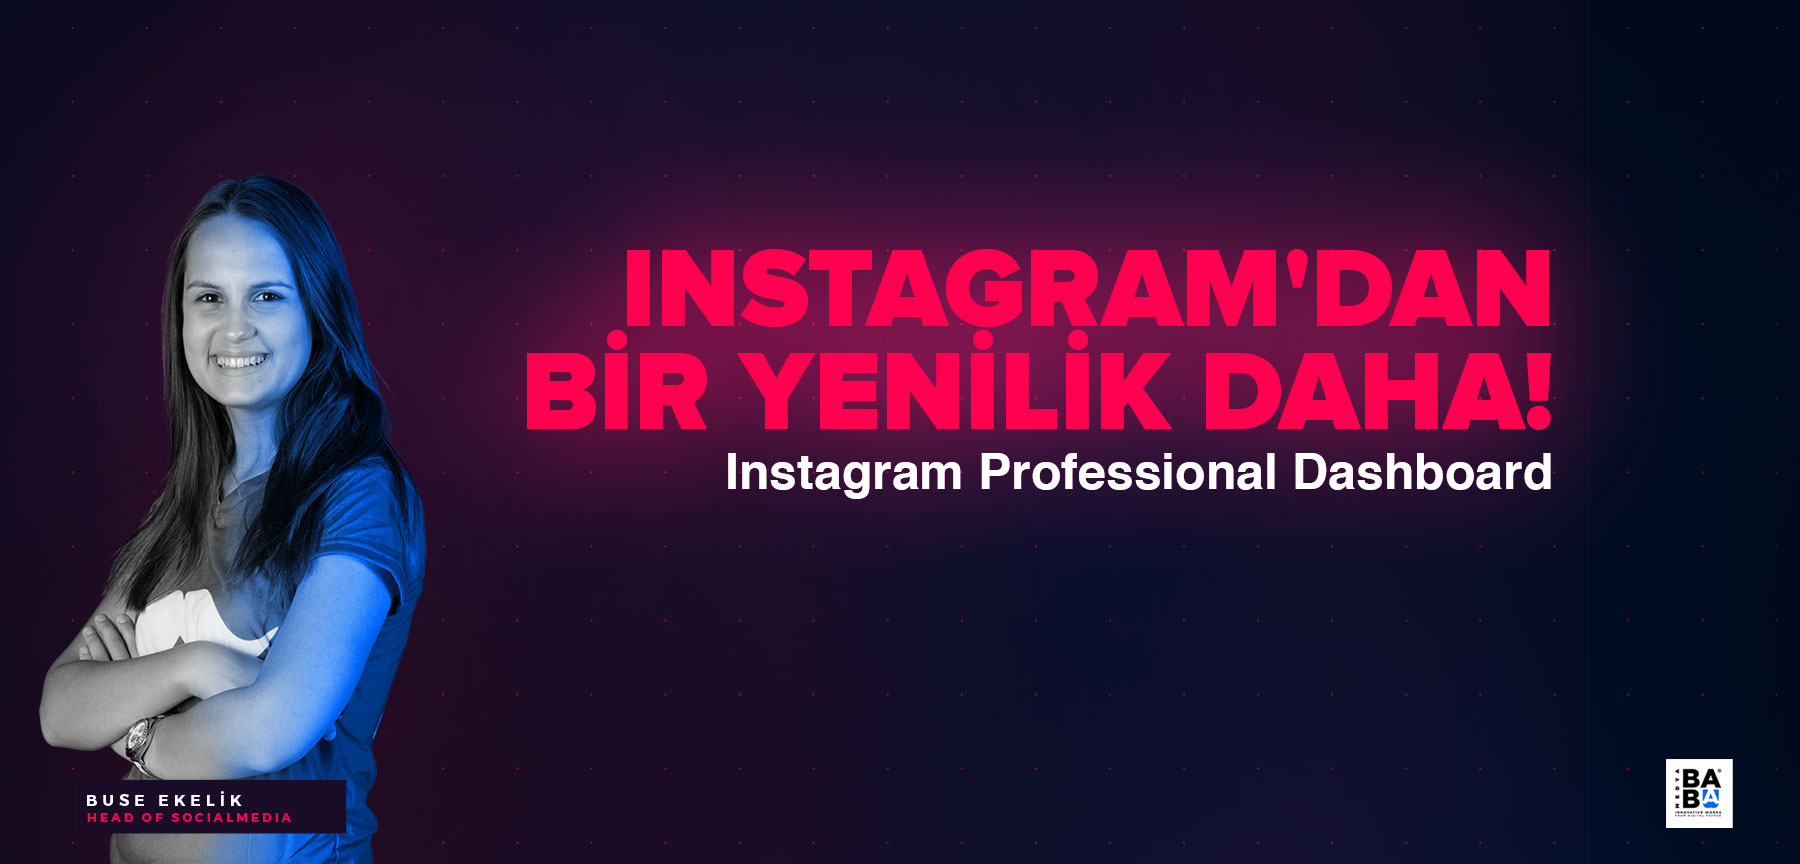 INSTAGRAM'DAN bir yenilik daha! Instagram Professional Dashboard